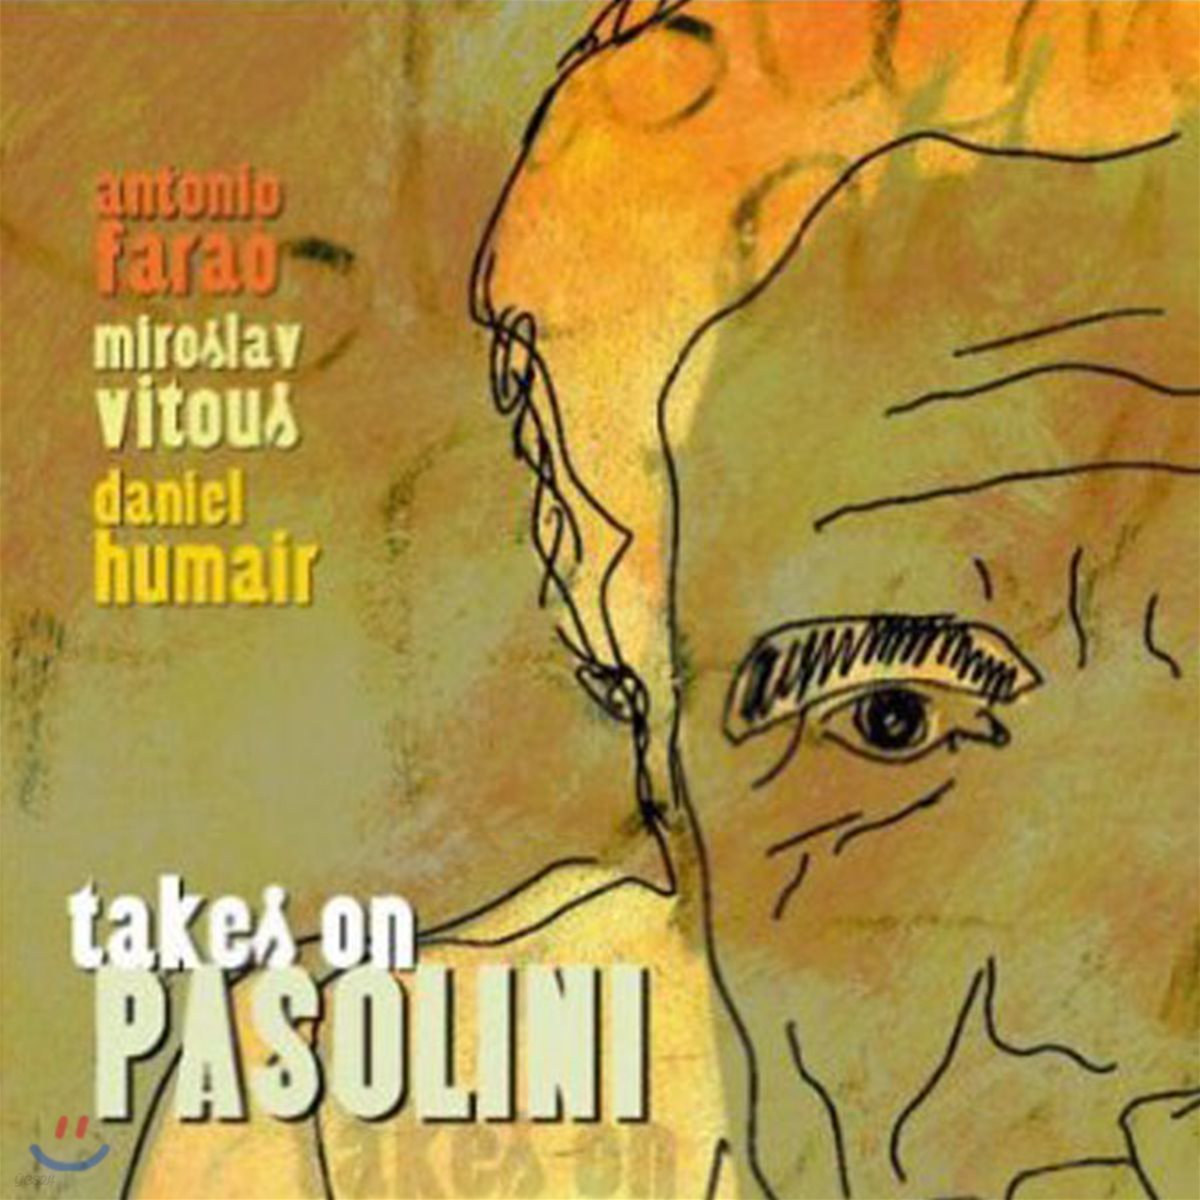 Antonio Farao 파올로 파졸리니 영화를 재즈 피아노로 연주하다 (Takes On Pasolini)